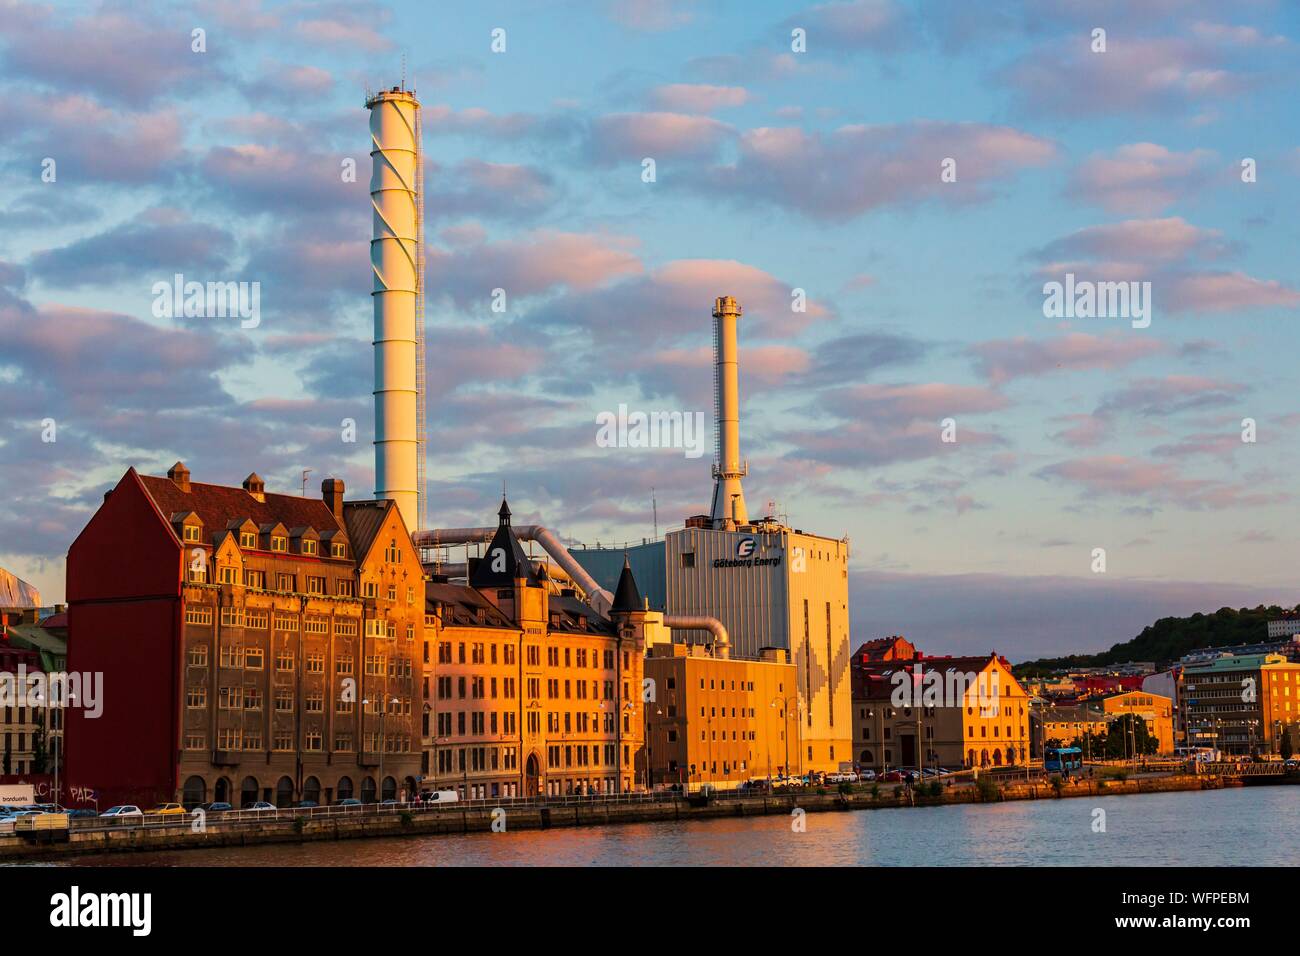 Schweden, Vastra Gotaland, Göteborg (Gothenburg), Blick auf das thermische Kraftwerk der Stadt und der Affarshuset Merkur Wer ist das älteste erhaltene Haus auf der Anlegebrücke Stockfoto